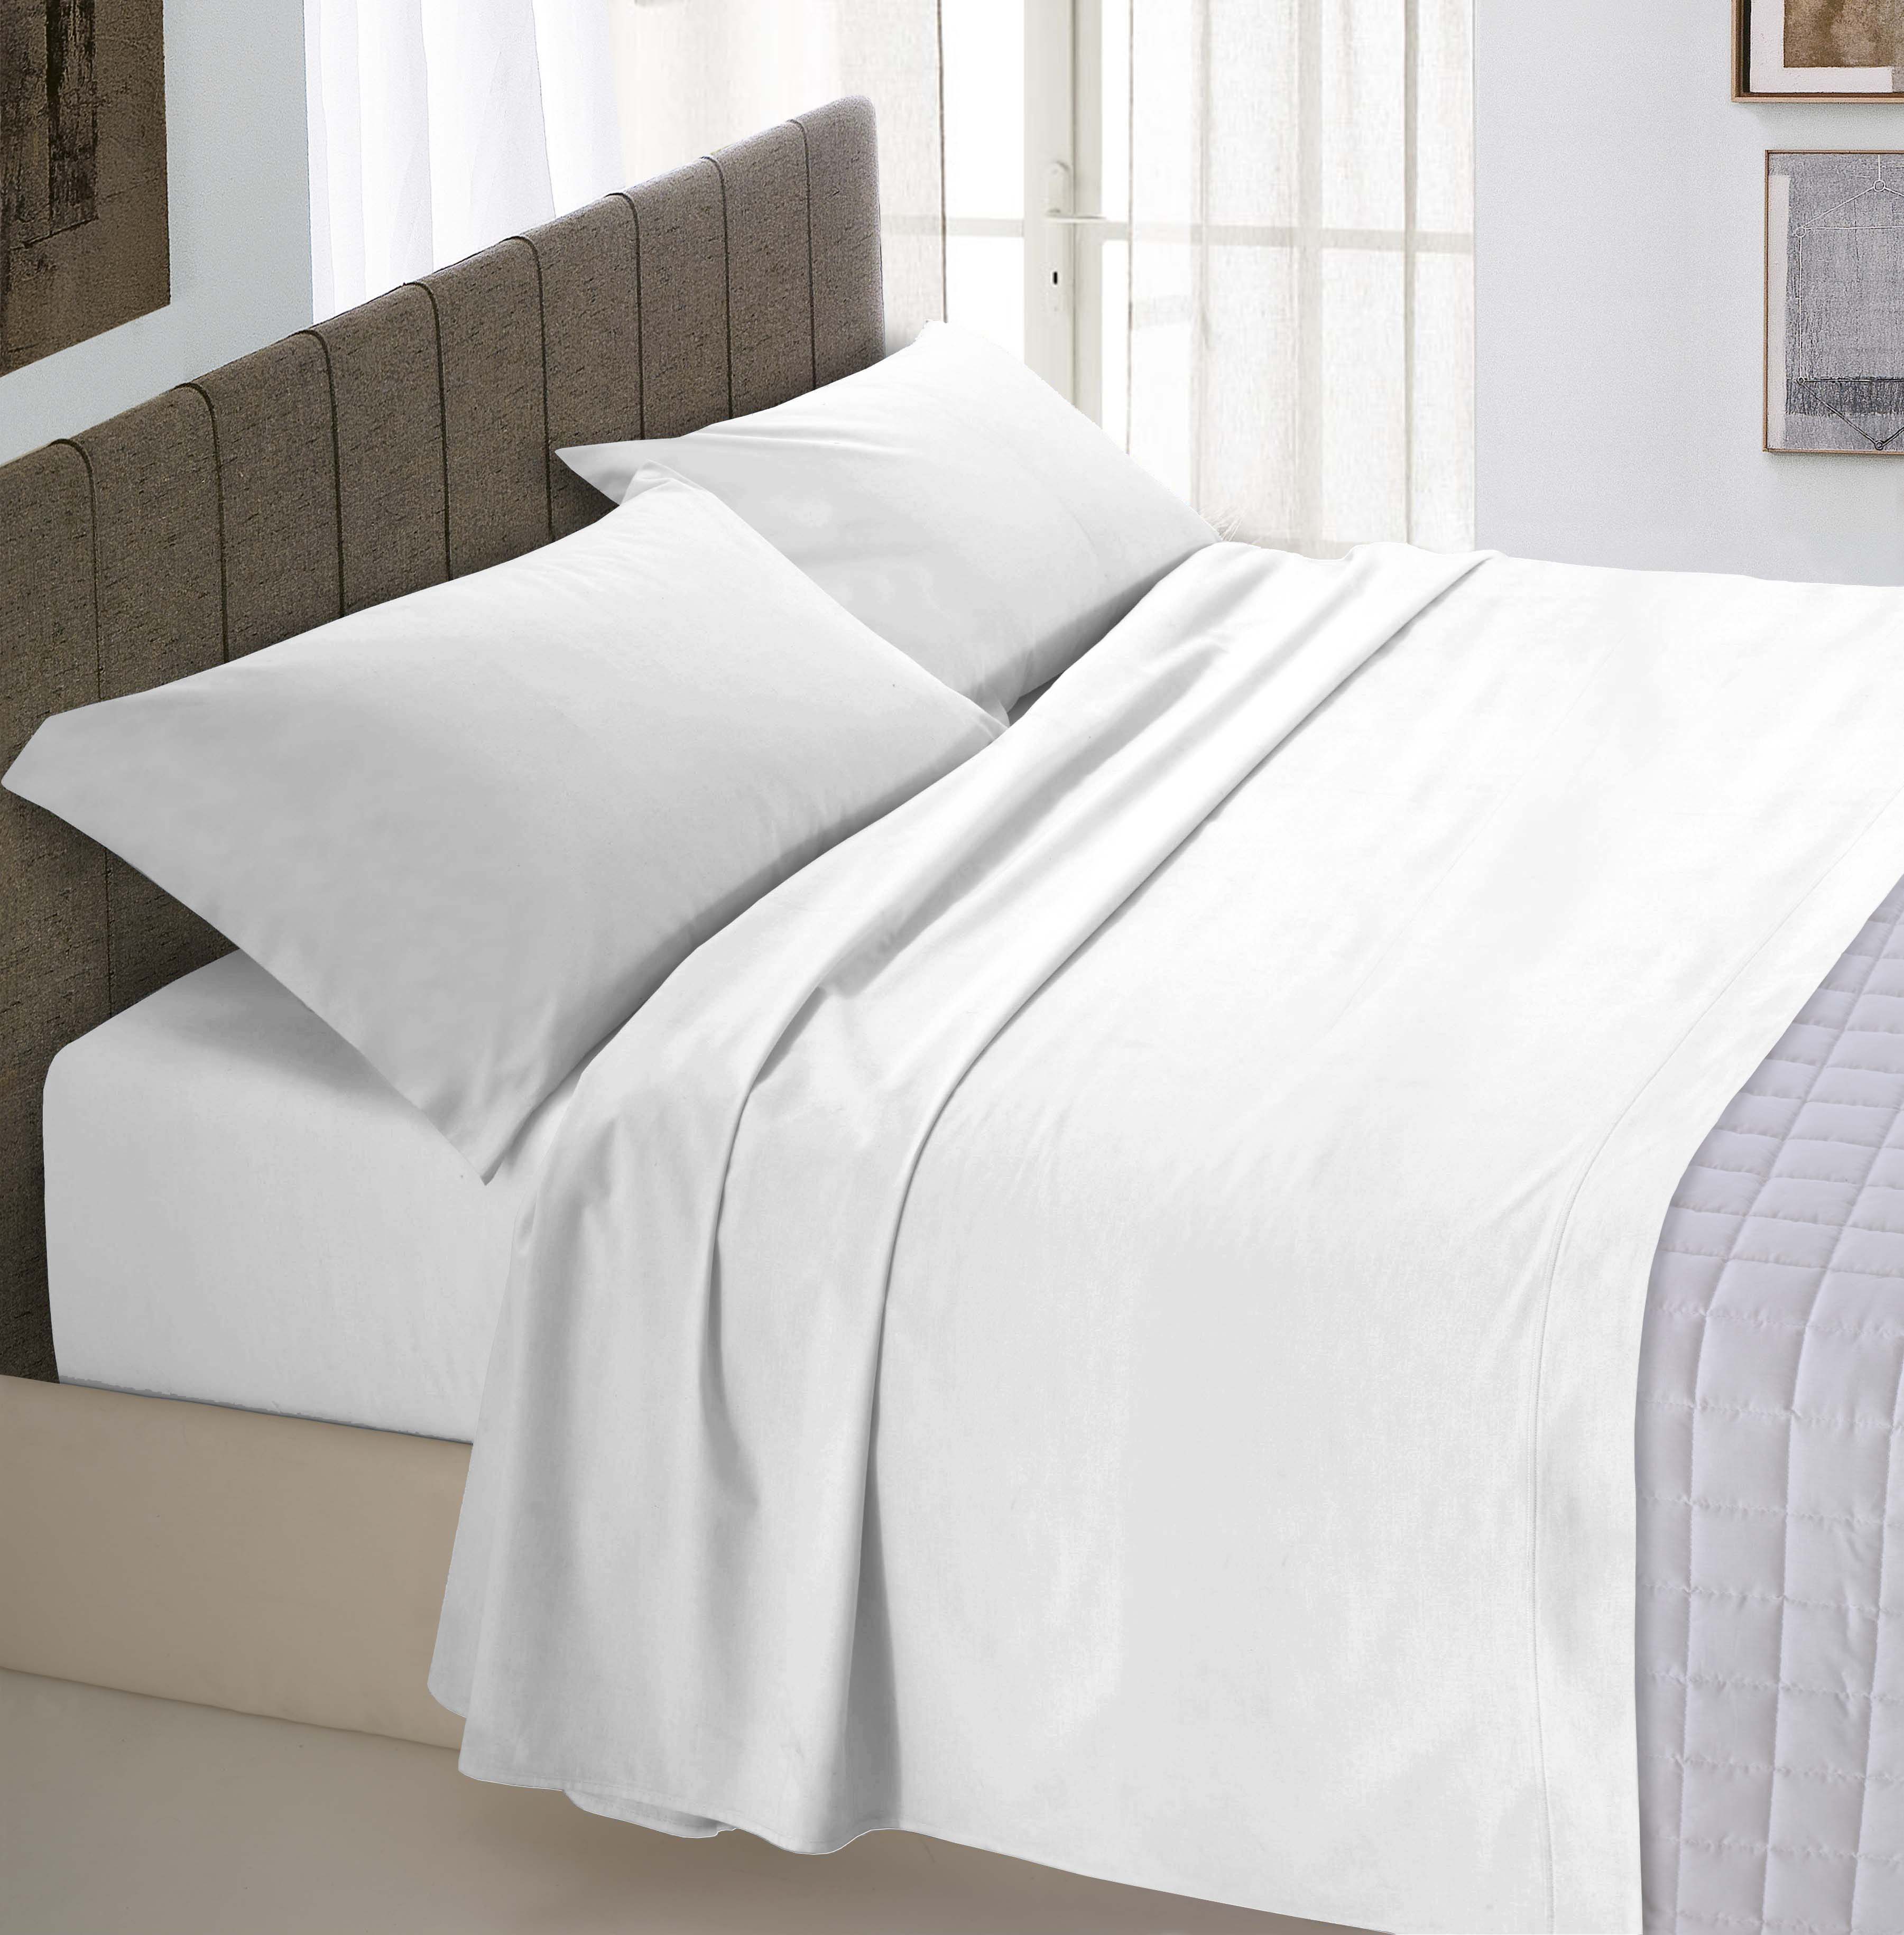 Matrimoniale Bianco/Bianco Italian Bed Linen Parure Copri Piumino Natural Color 